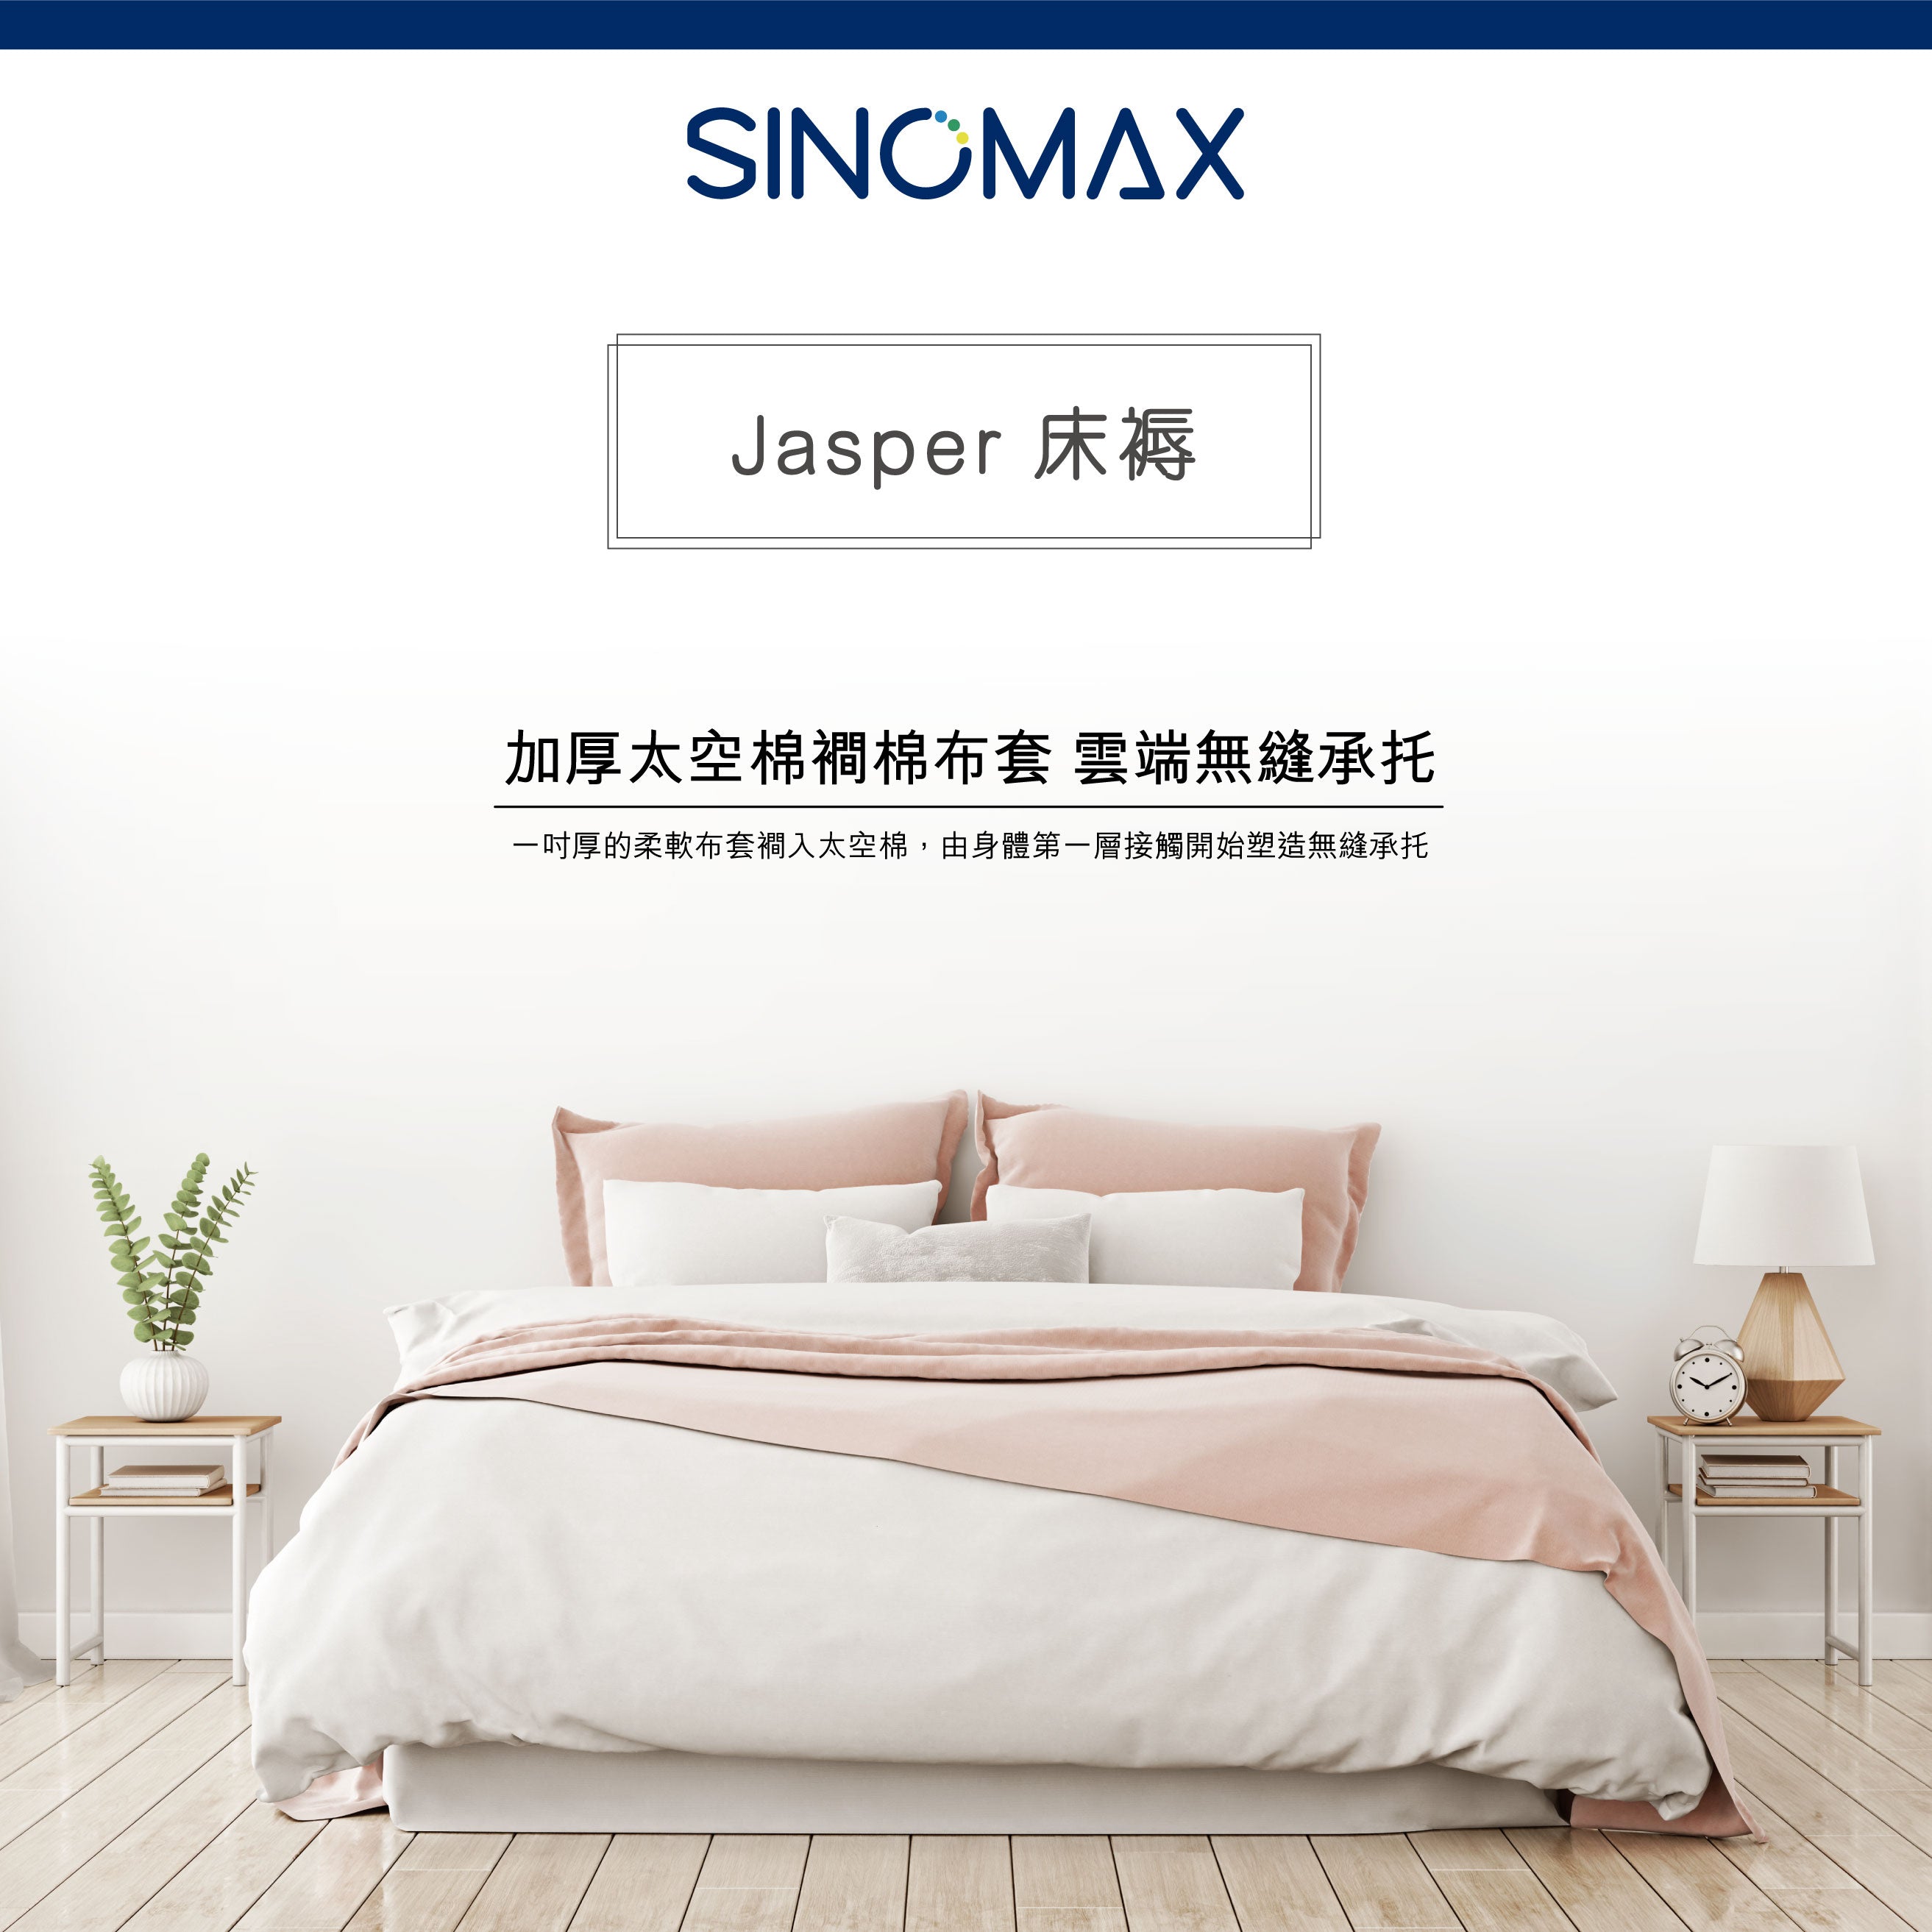 Jasper 床褥 54" x 75" x 8"